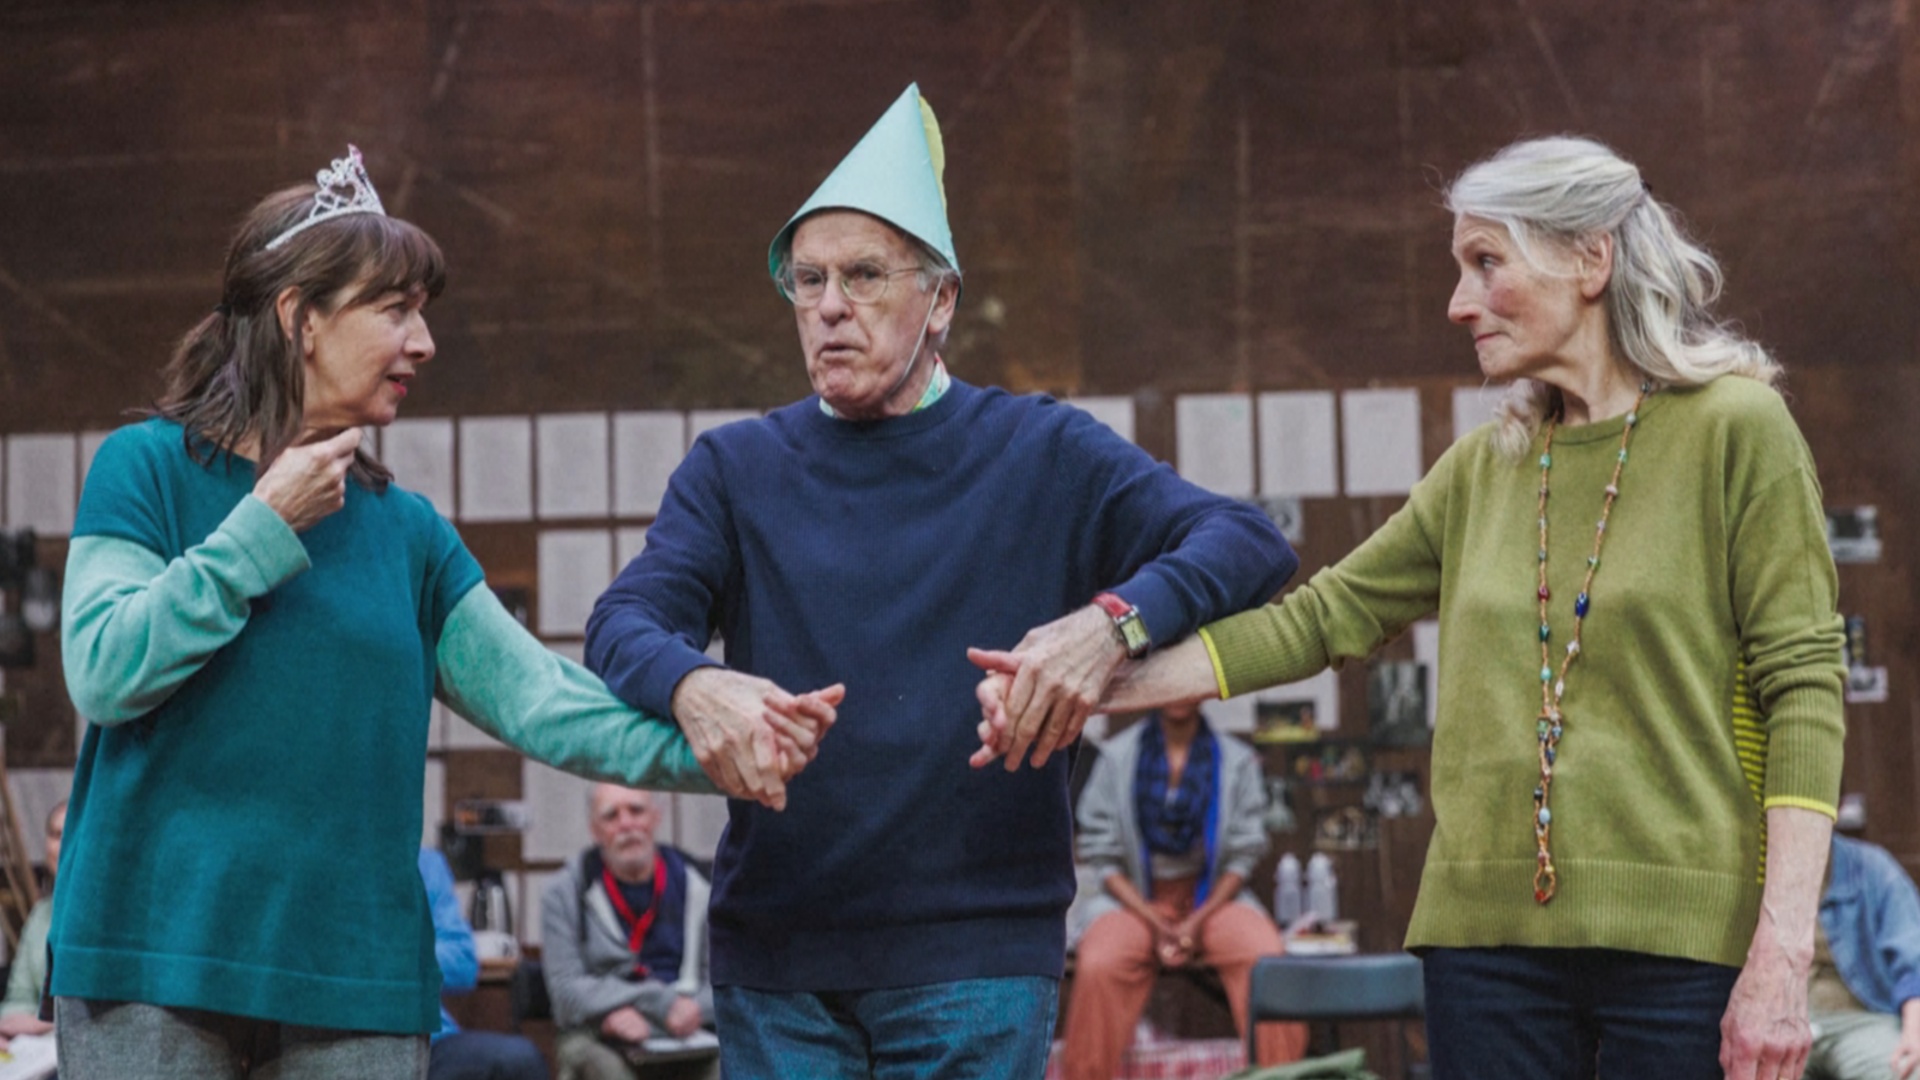 Молоды душой: 70-летние актёры играют юных влюблённых в театре в Англии